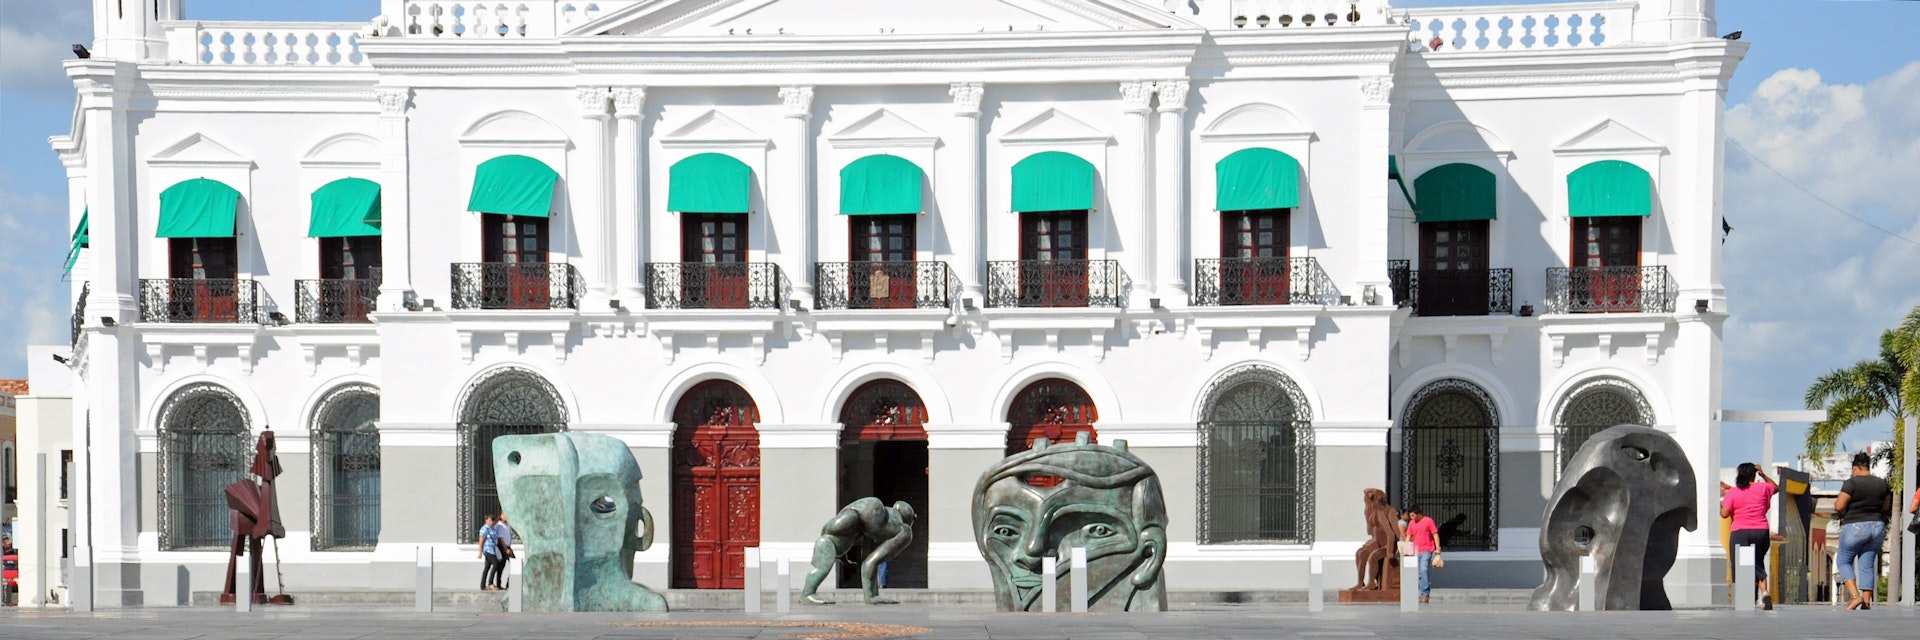 Palacio de Gobierno and Plaza, Villahermosa